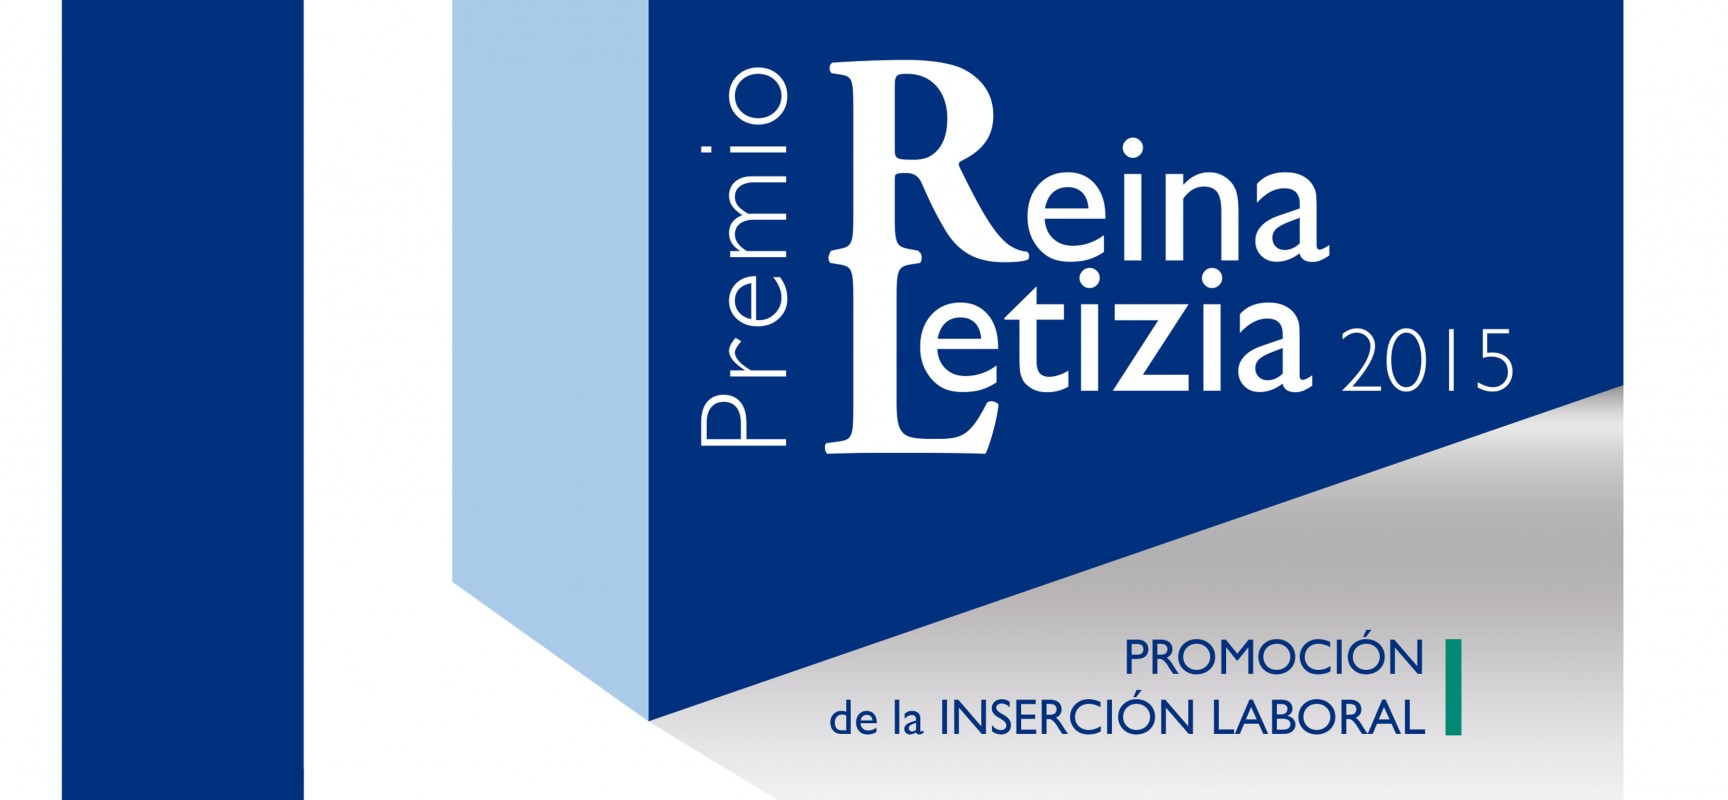 Se convoca el Premio Reina Letizia 2015 de promoción de la inserción laboral de las personas con discapacidad.